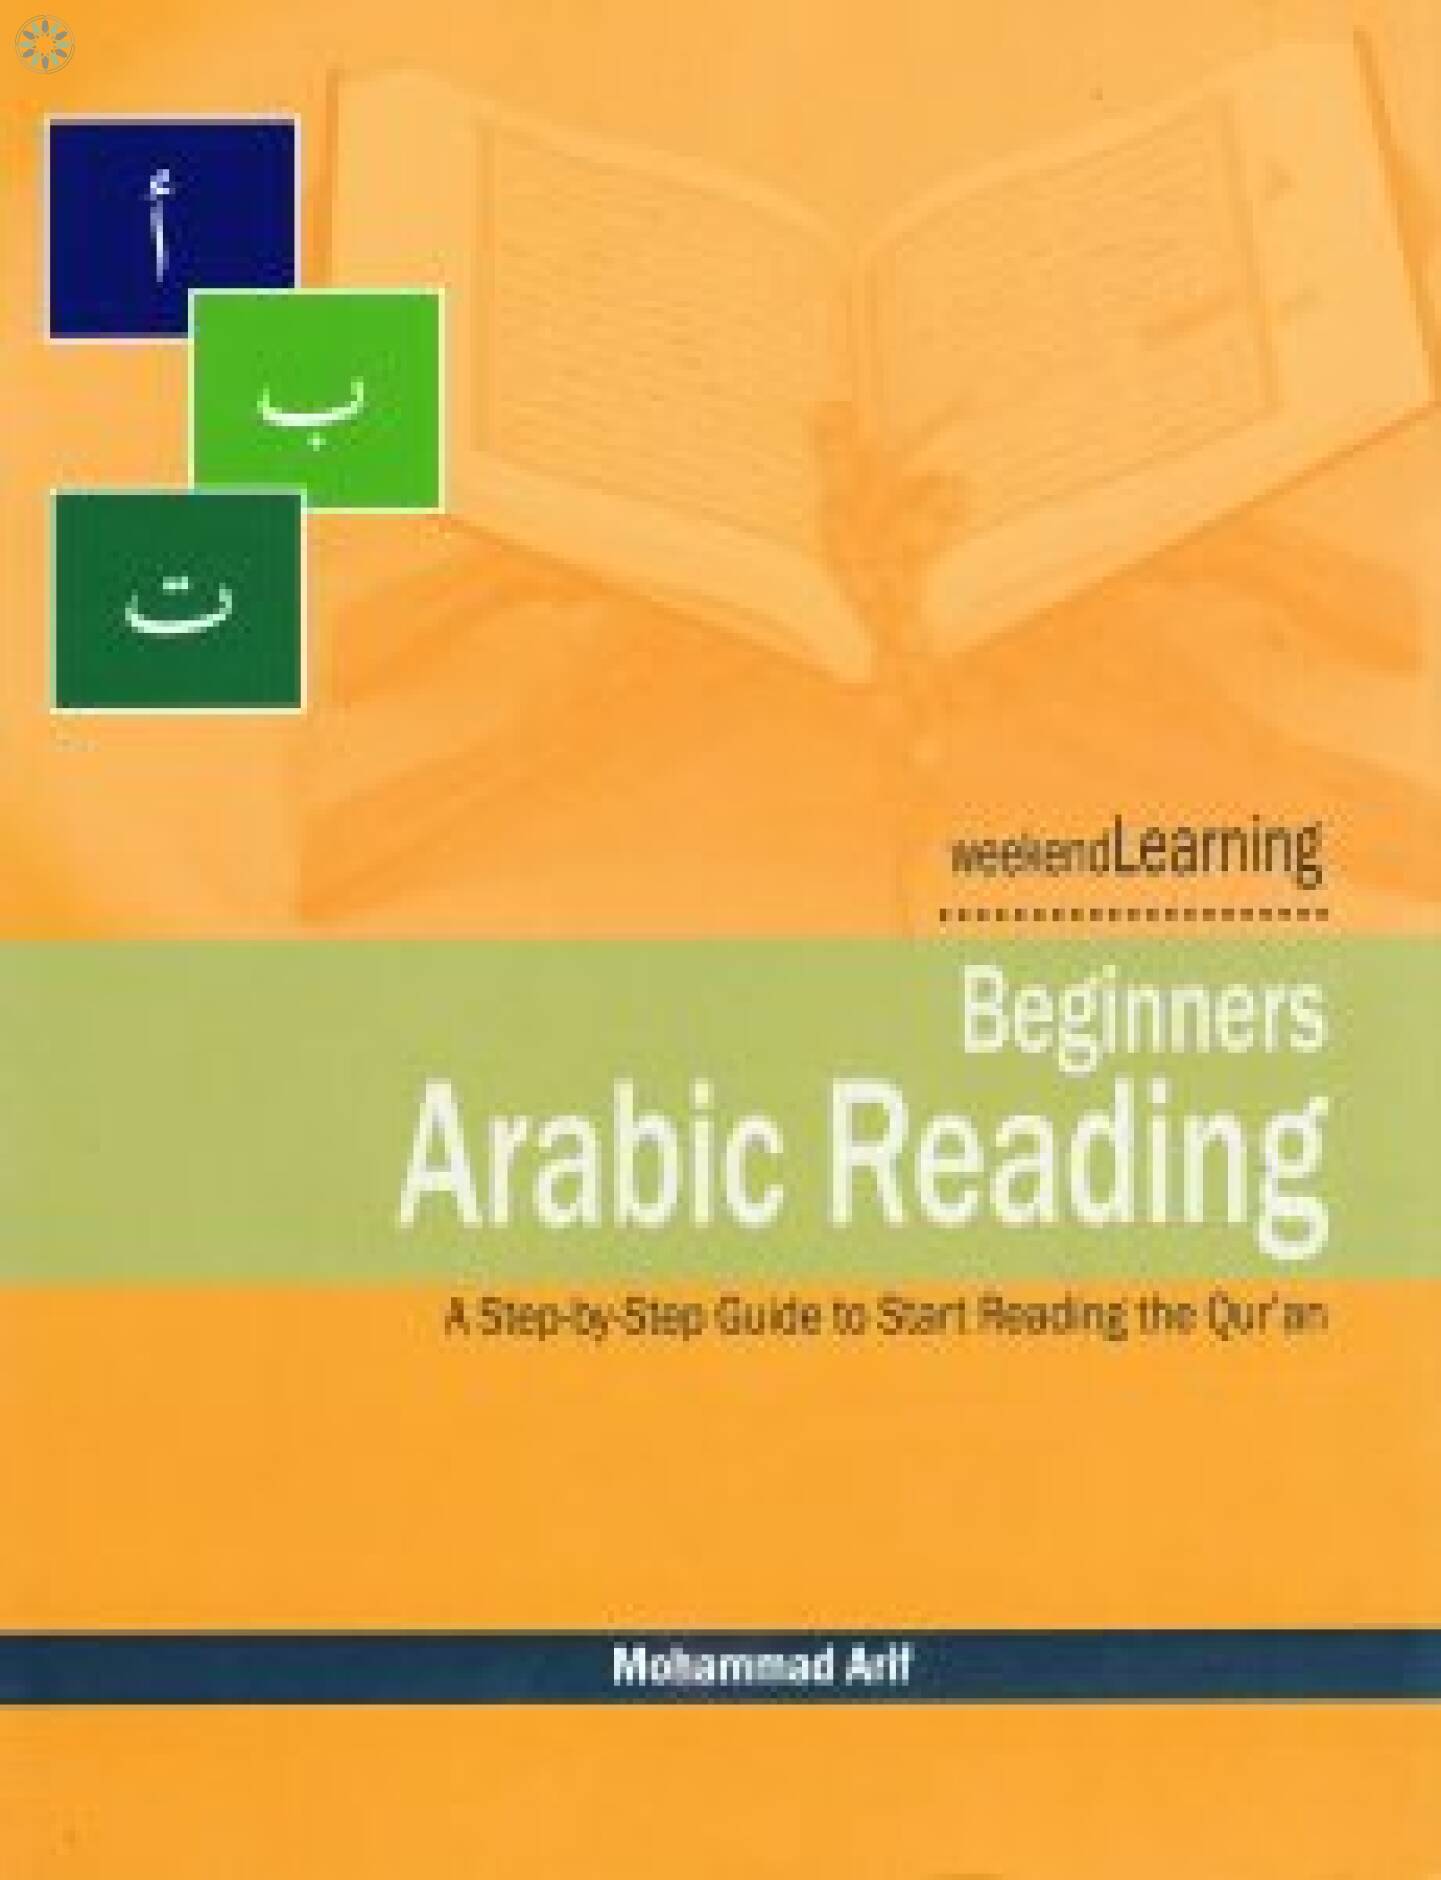 Books › Weekend Learning › Weekend Learning - Beginners Arabic Reading